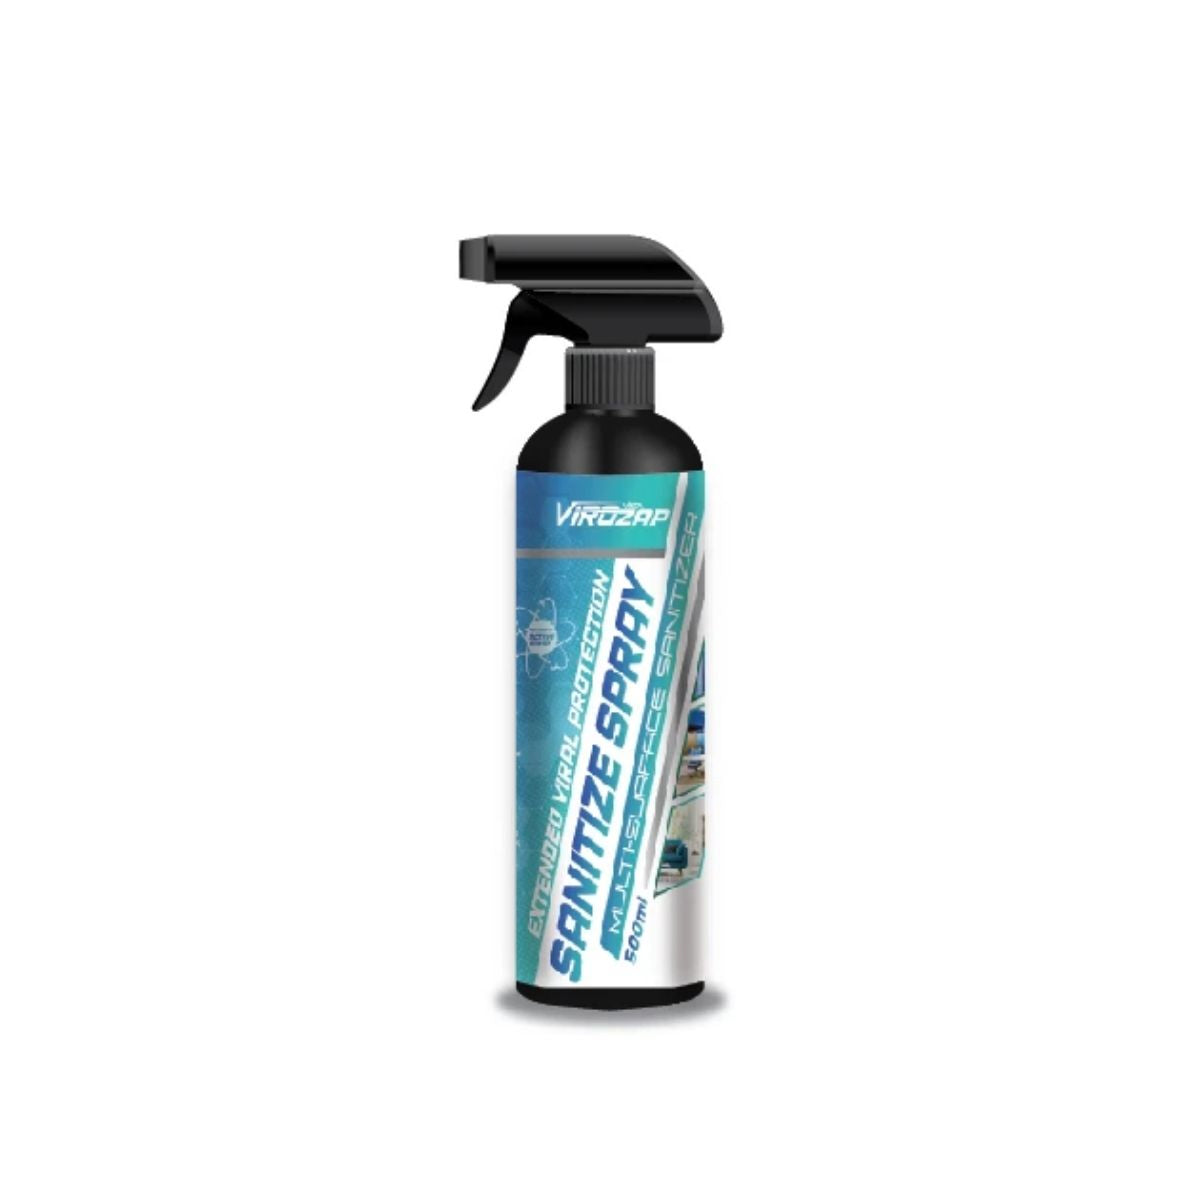 Vista Auto Care: Virozap Sanitize Spray (500 ML) - Outdoor Travel Gear 1